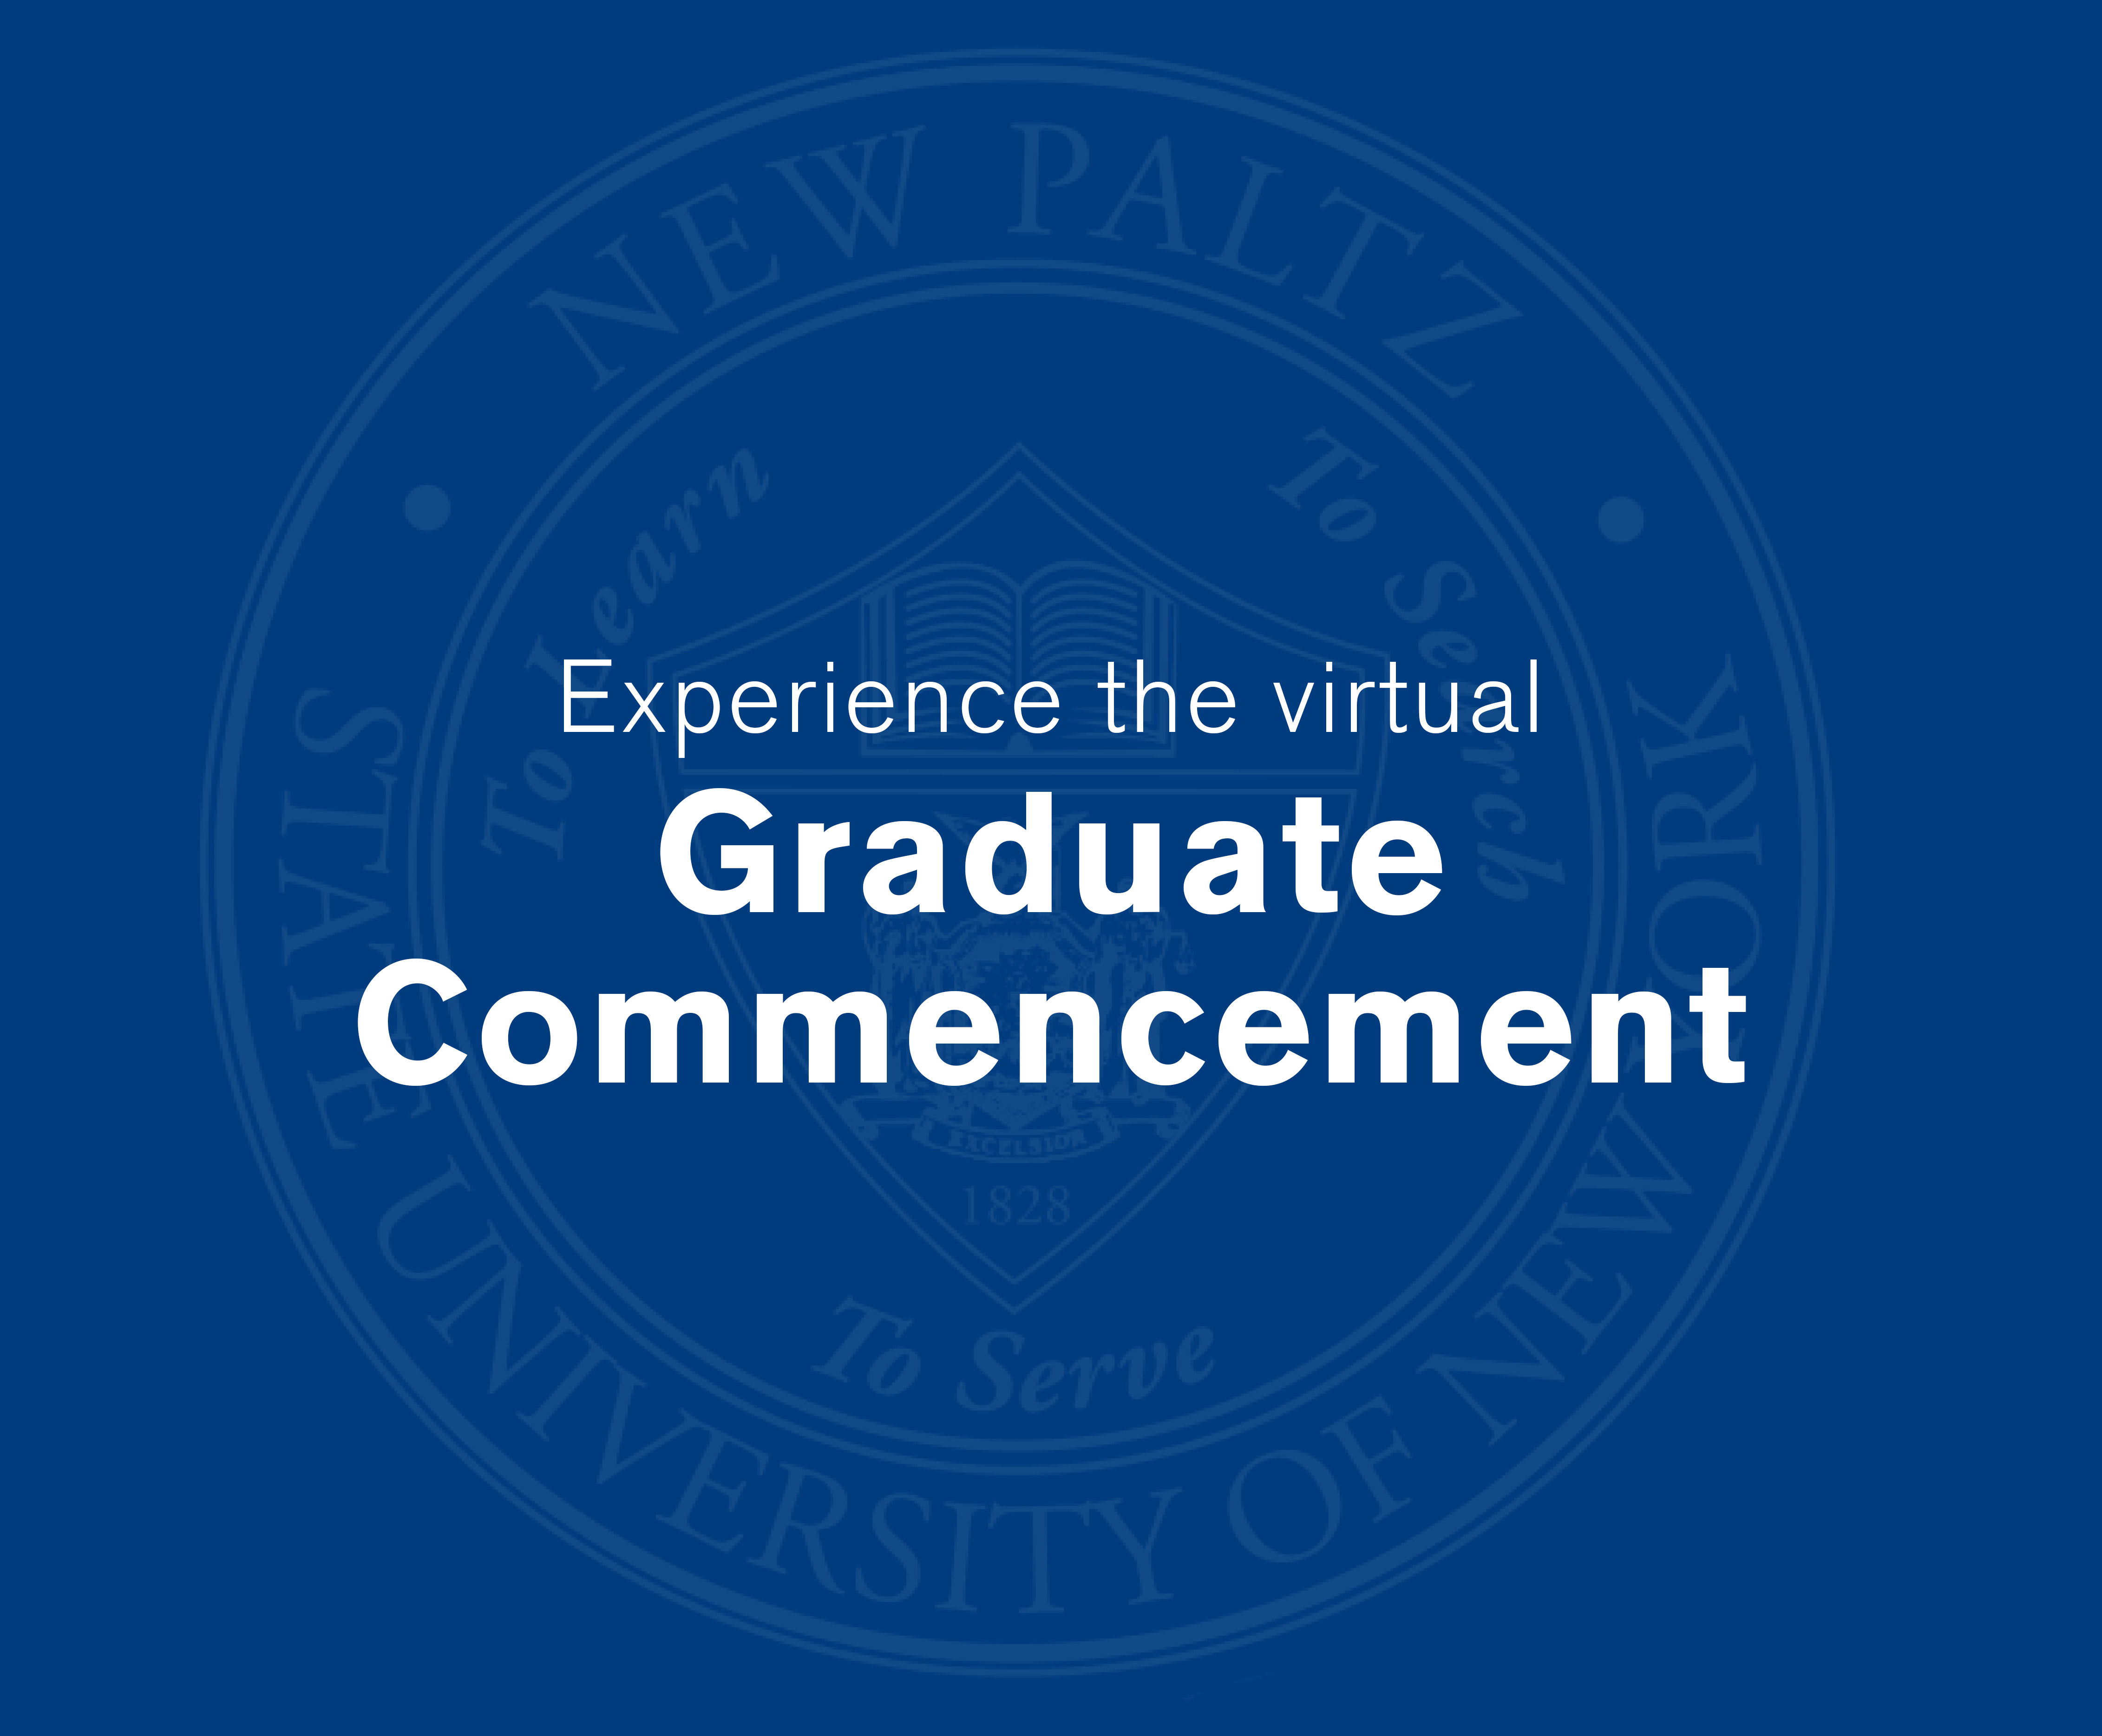 Graduate Commencement video link